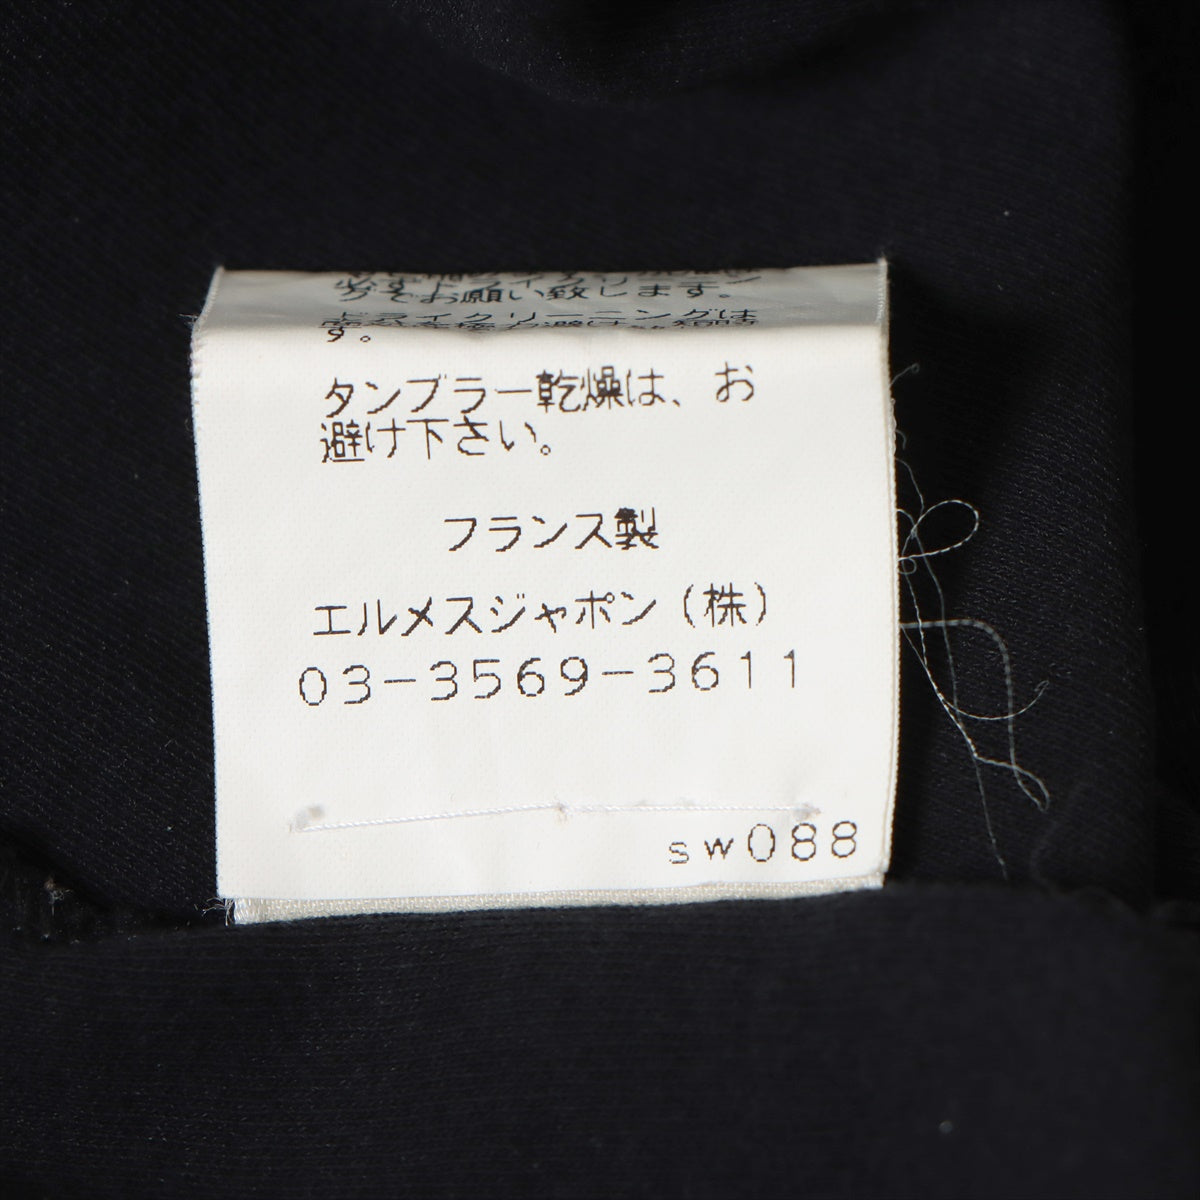 エルメス マルジェラ期 コットン Tシャツ 34 レディース ブラック